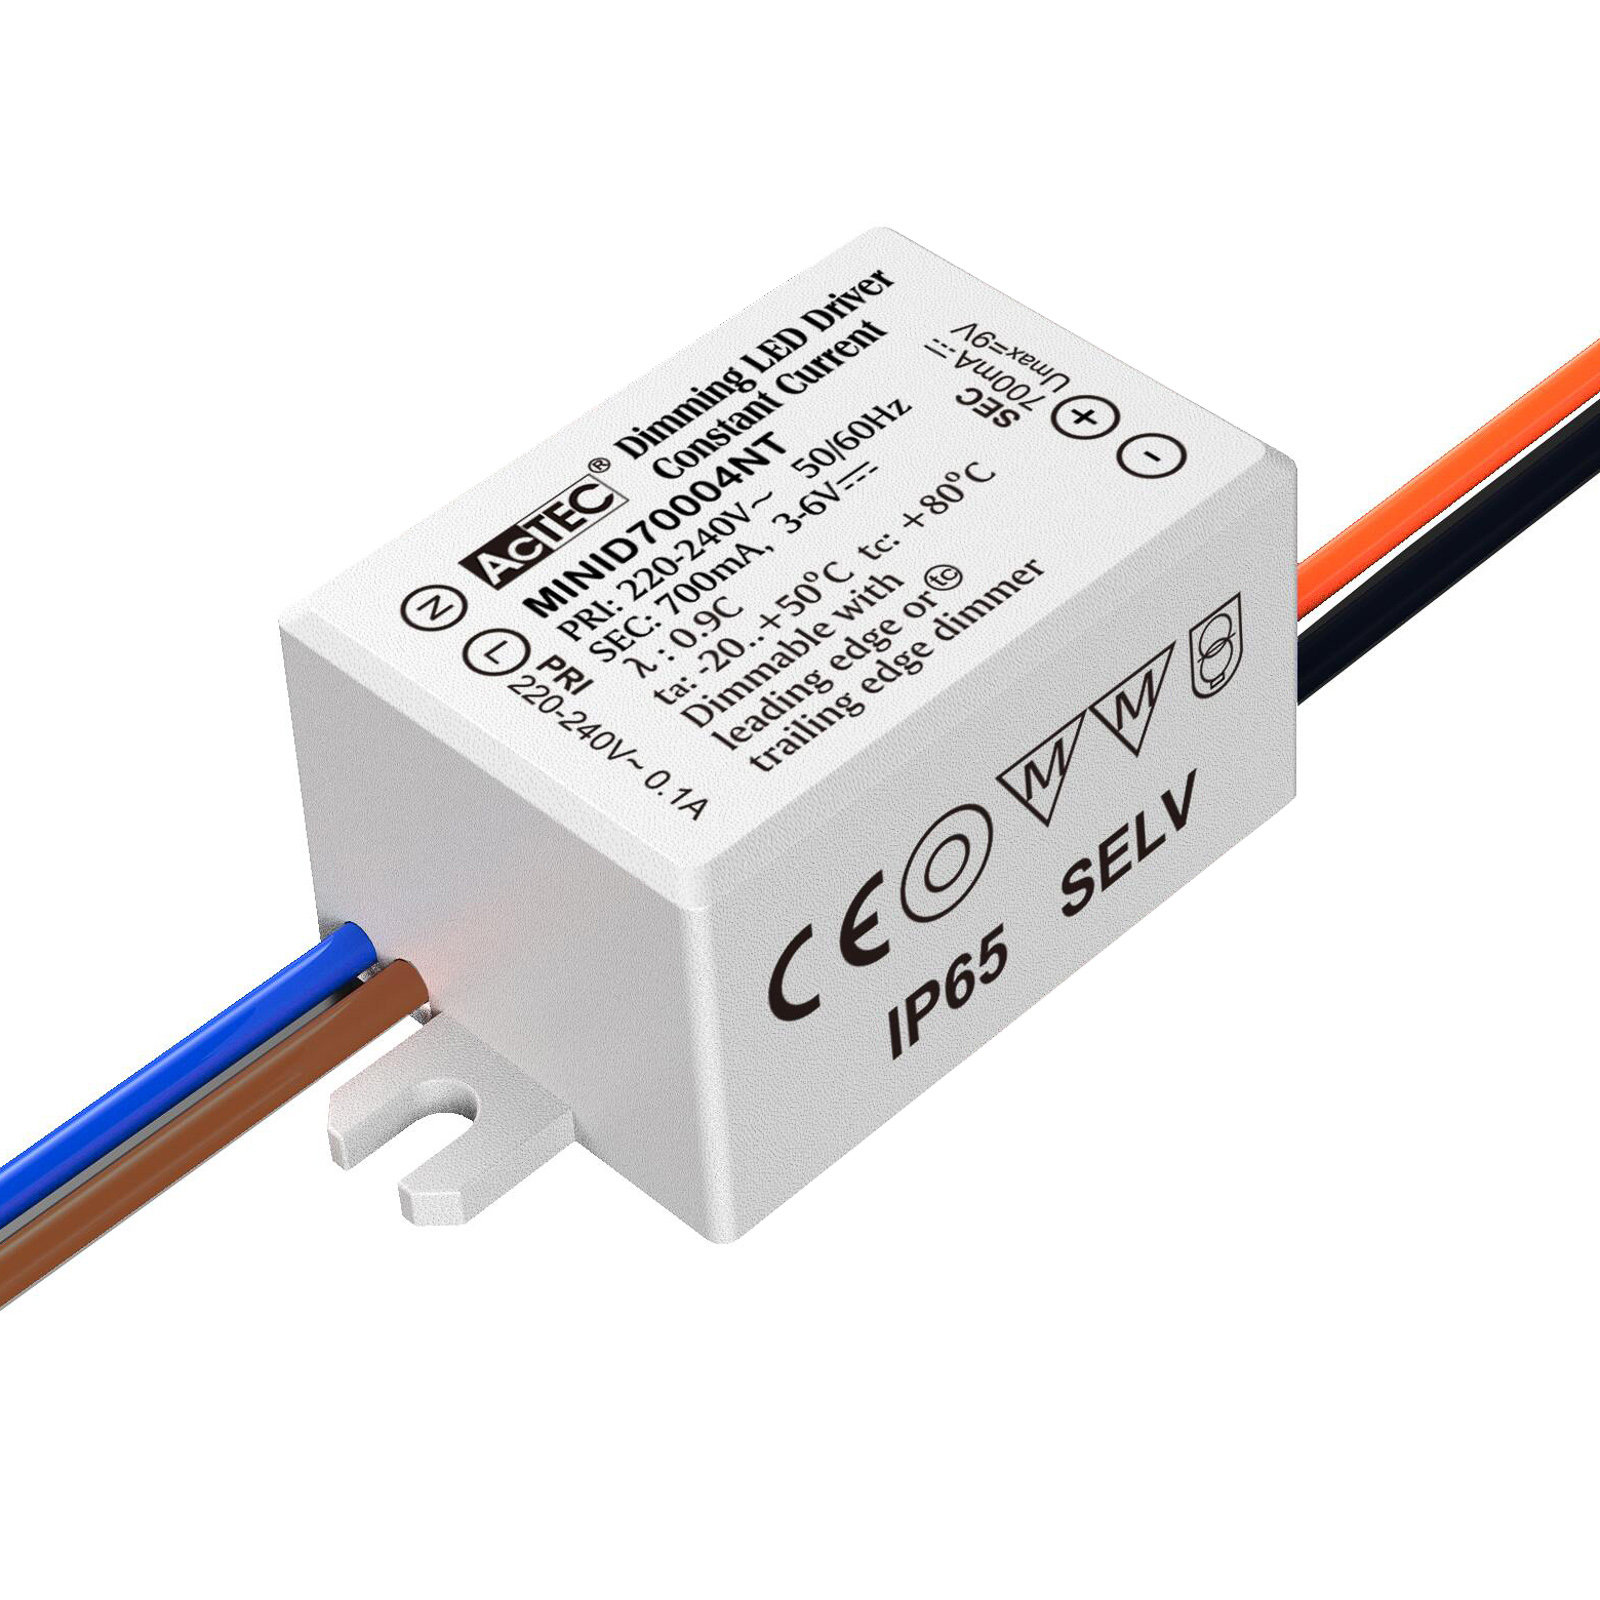 SLC állandó áramú vezérlő 3 - 6 V, 3 - 6 W